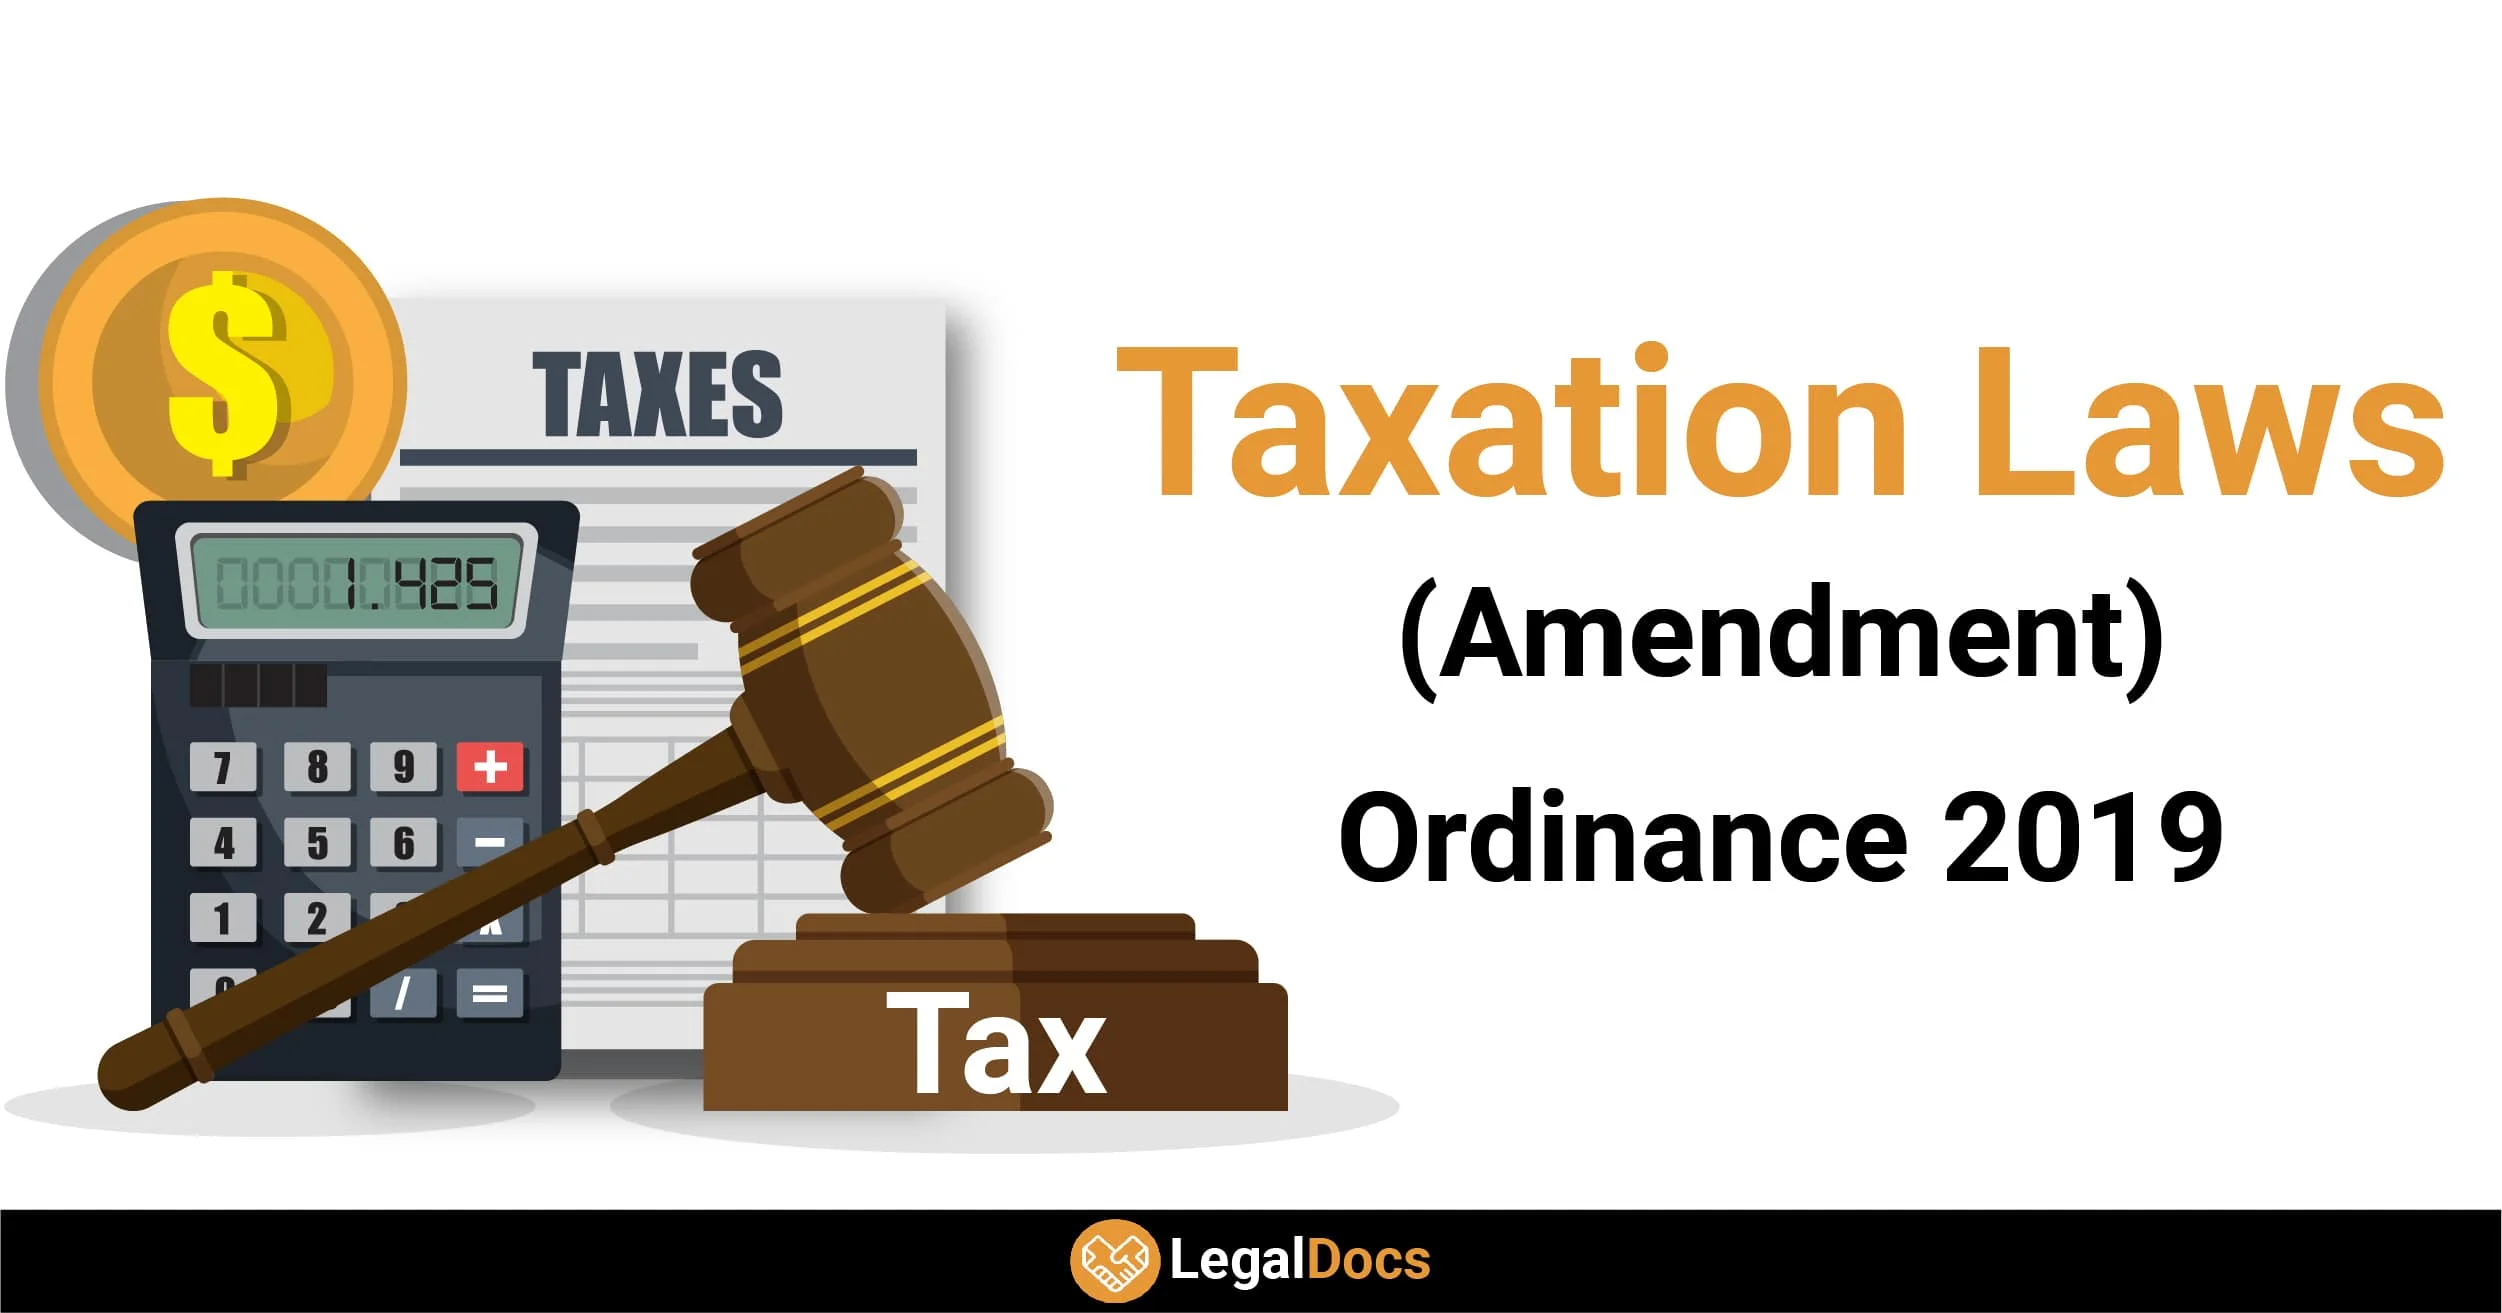 Taxation Laws (Amendment) Ordinance 2019